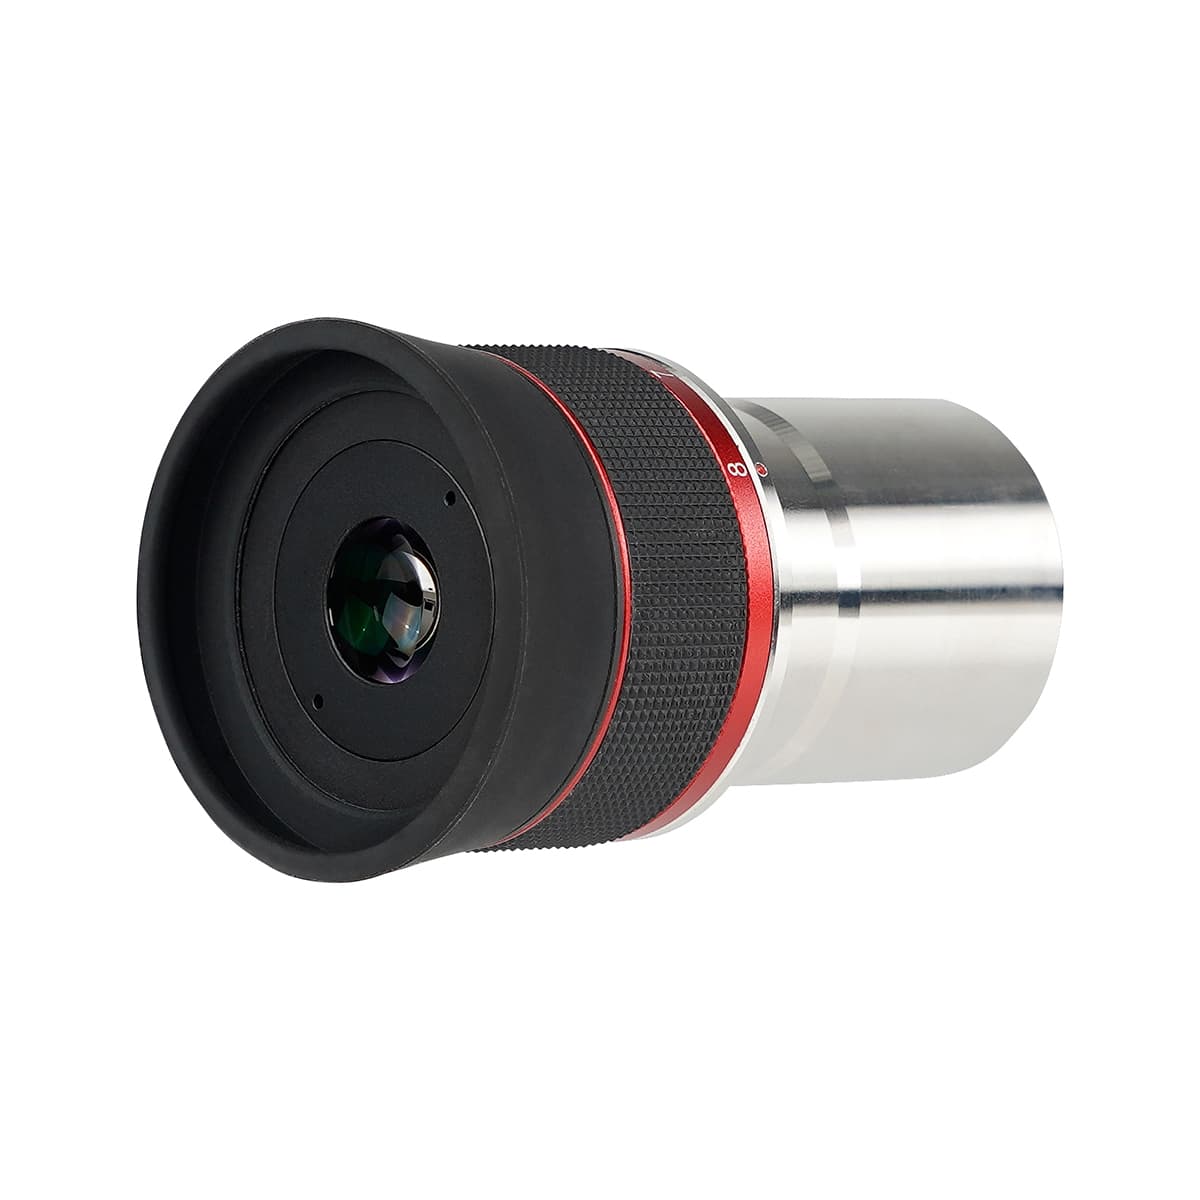 Svbony Eyepiece SVBONY SV215 1.25" 3mm-8mm Planetary Zoom Eyepiece - W9166A